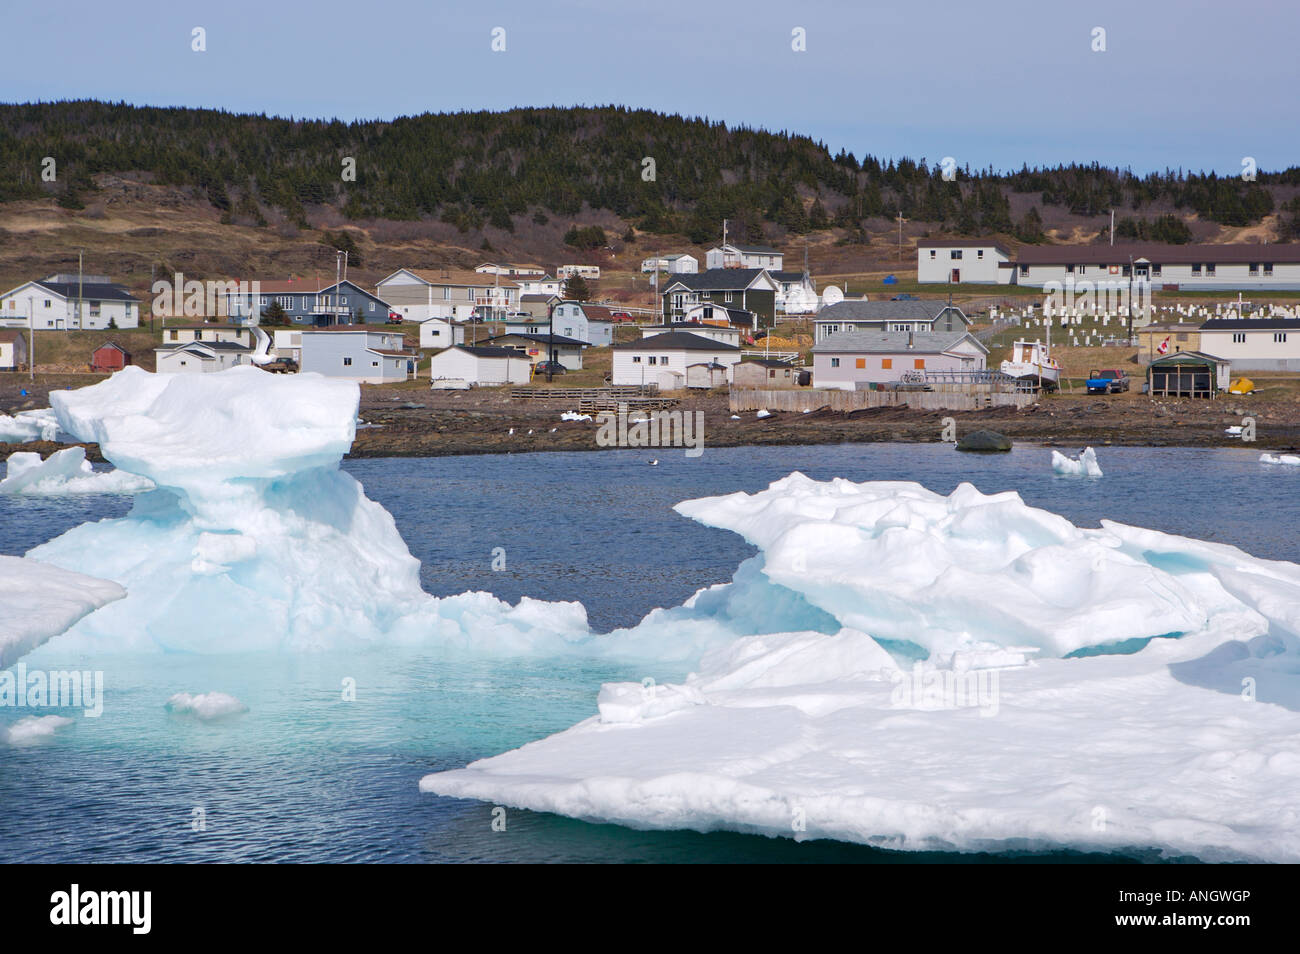 Packeis in der Conche Hafen, Conche, Französisch Ufer, große nördliche Halbinsel, Viking Trail, Neufundland & Labrador, Kanada. Stockfoto